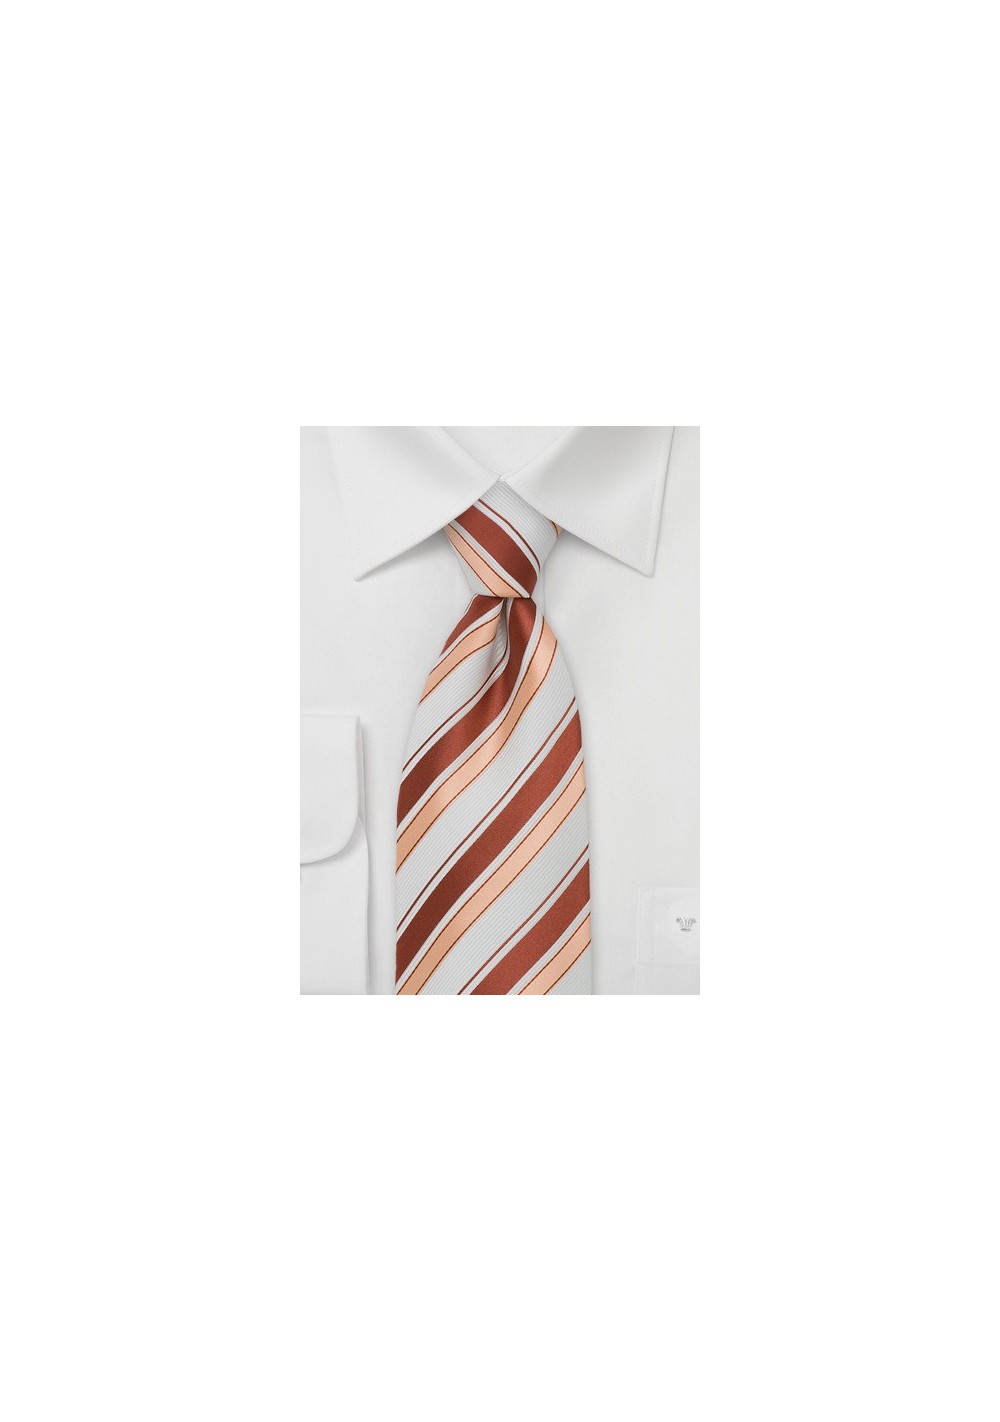 Striped Silk Tie in Coral, Peach, and White